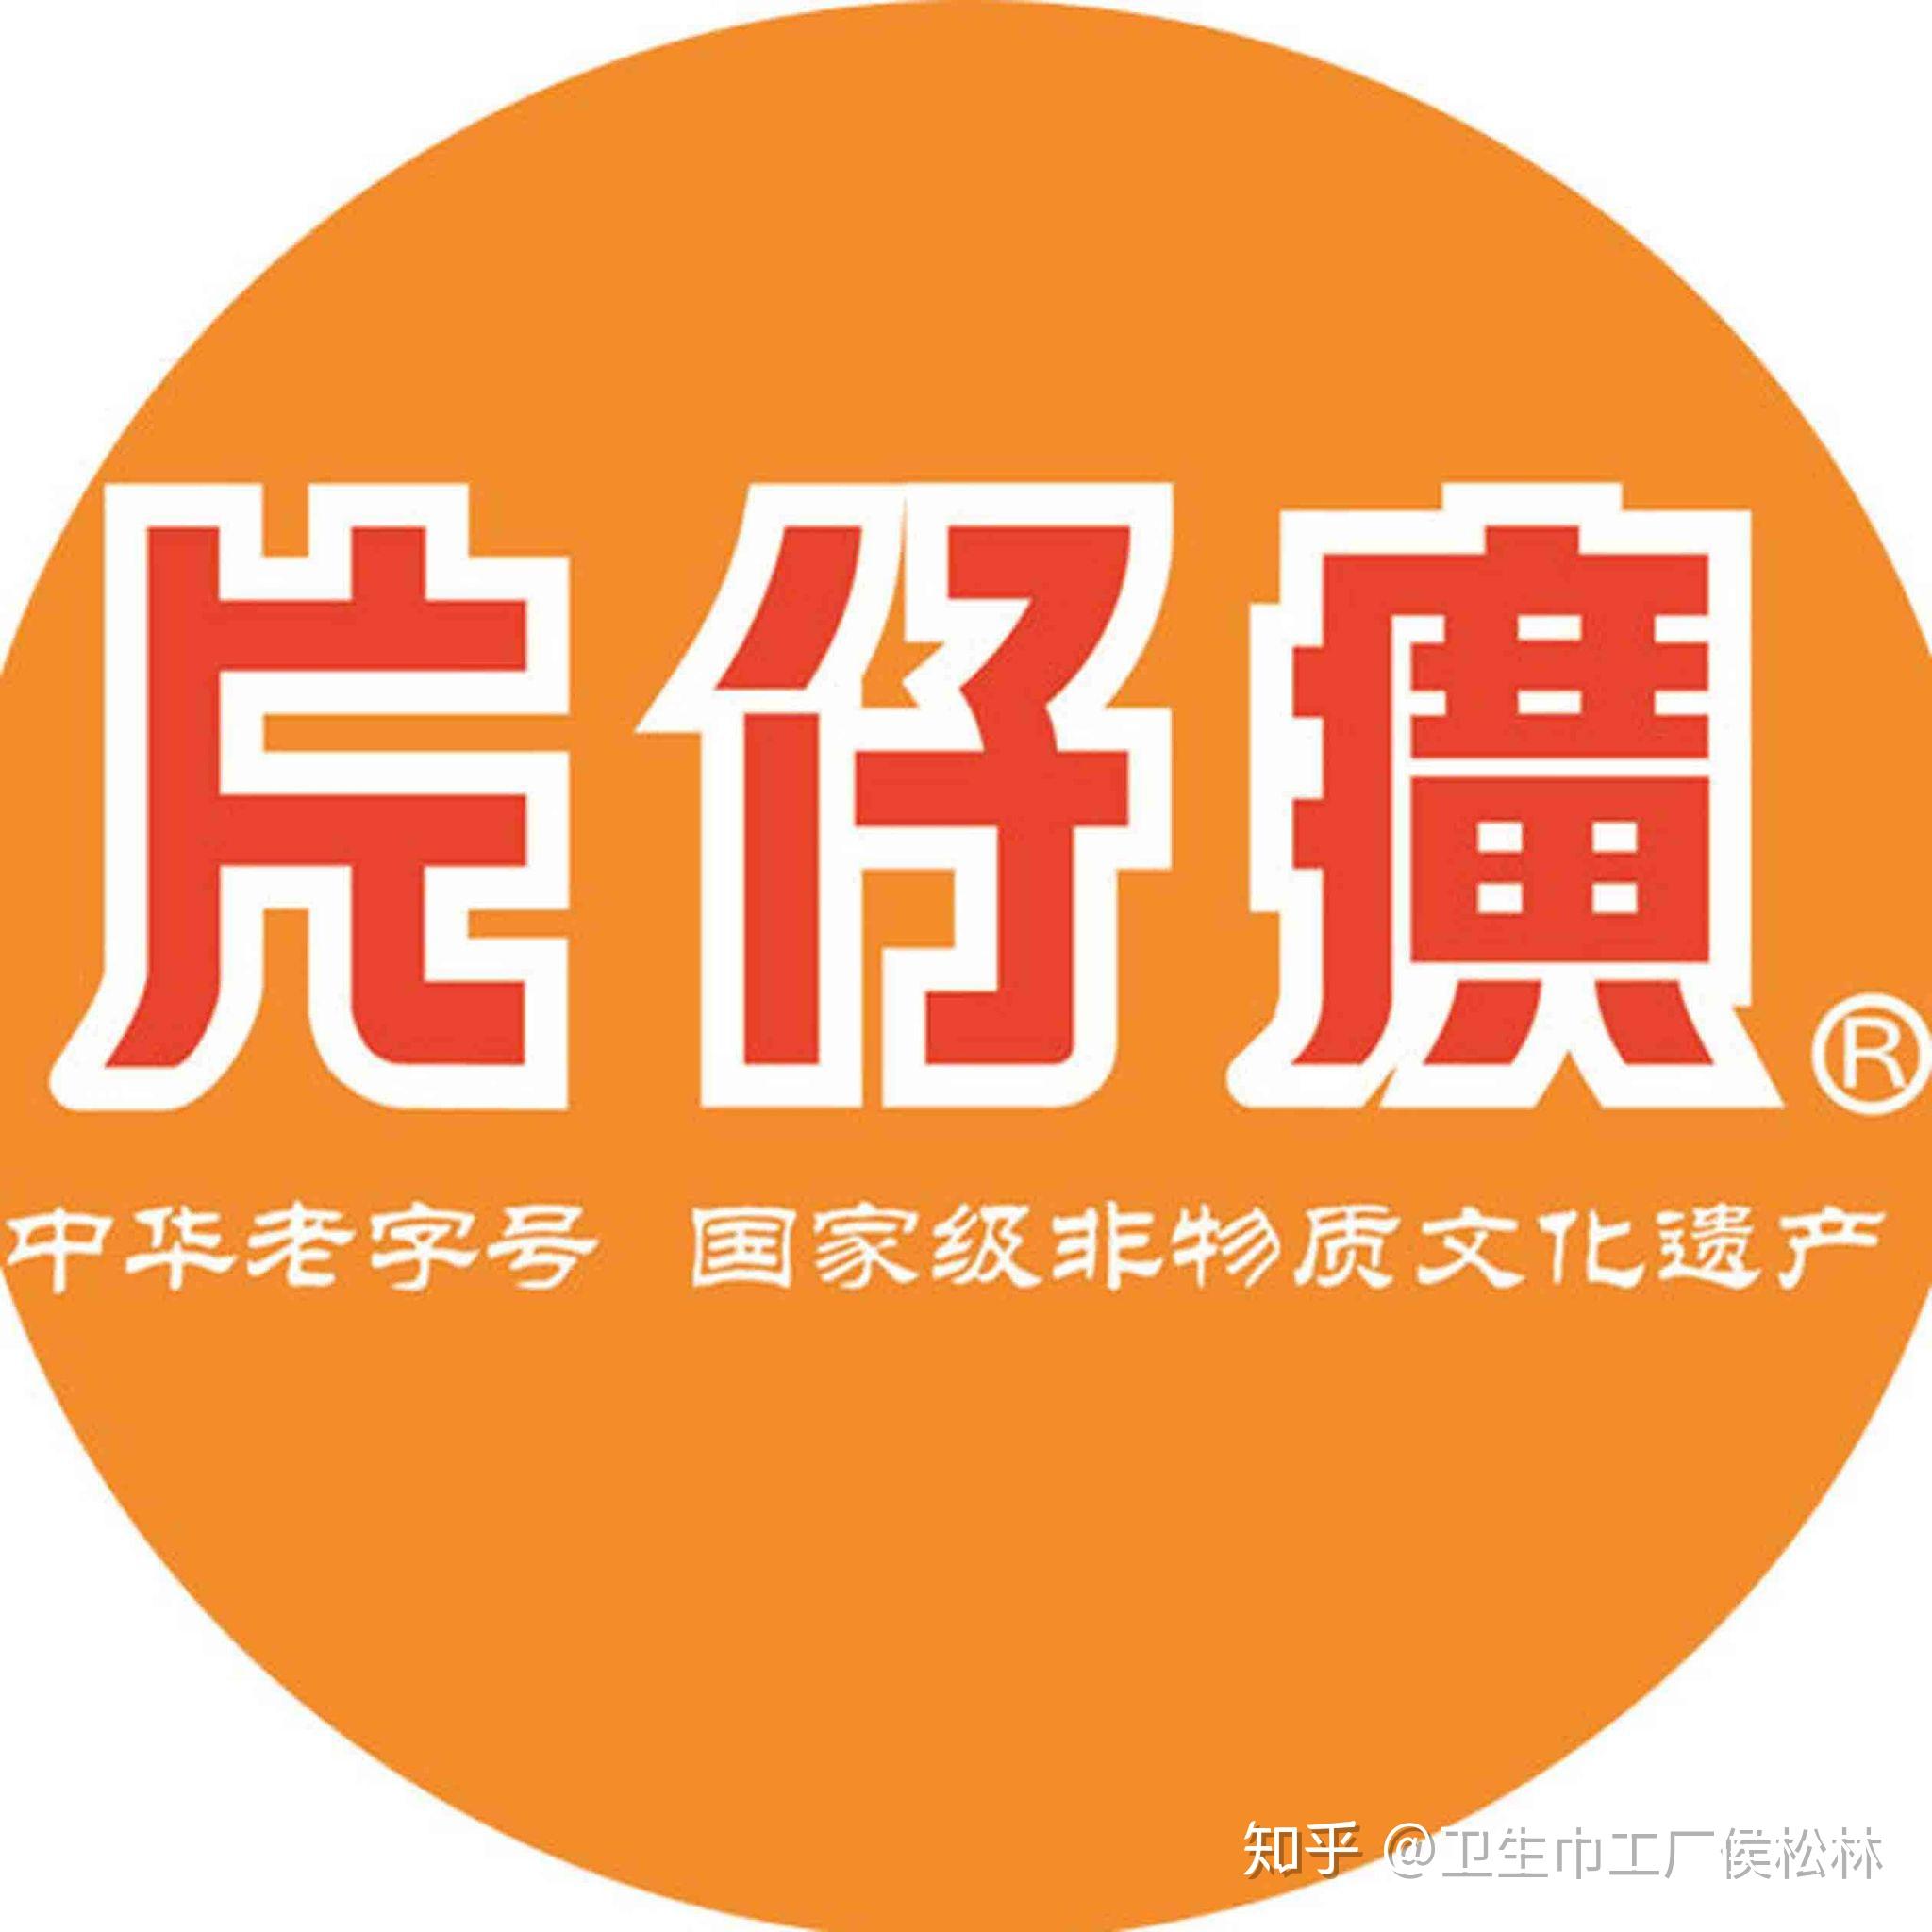 片仔癀 logo图片